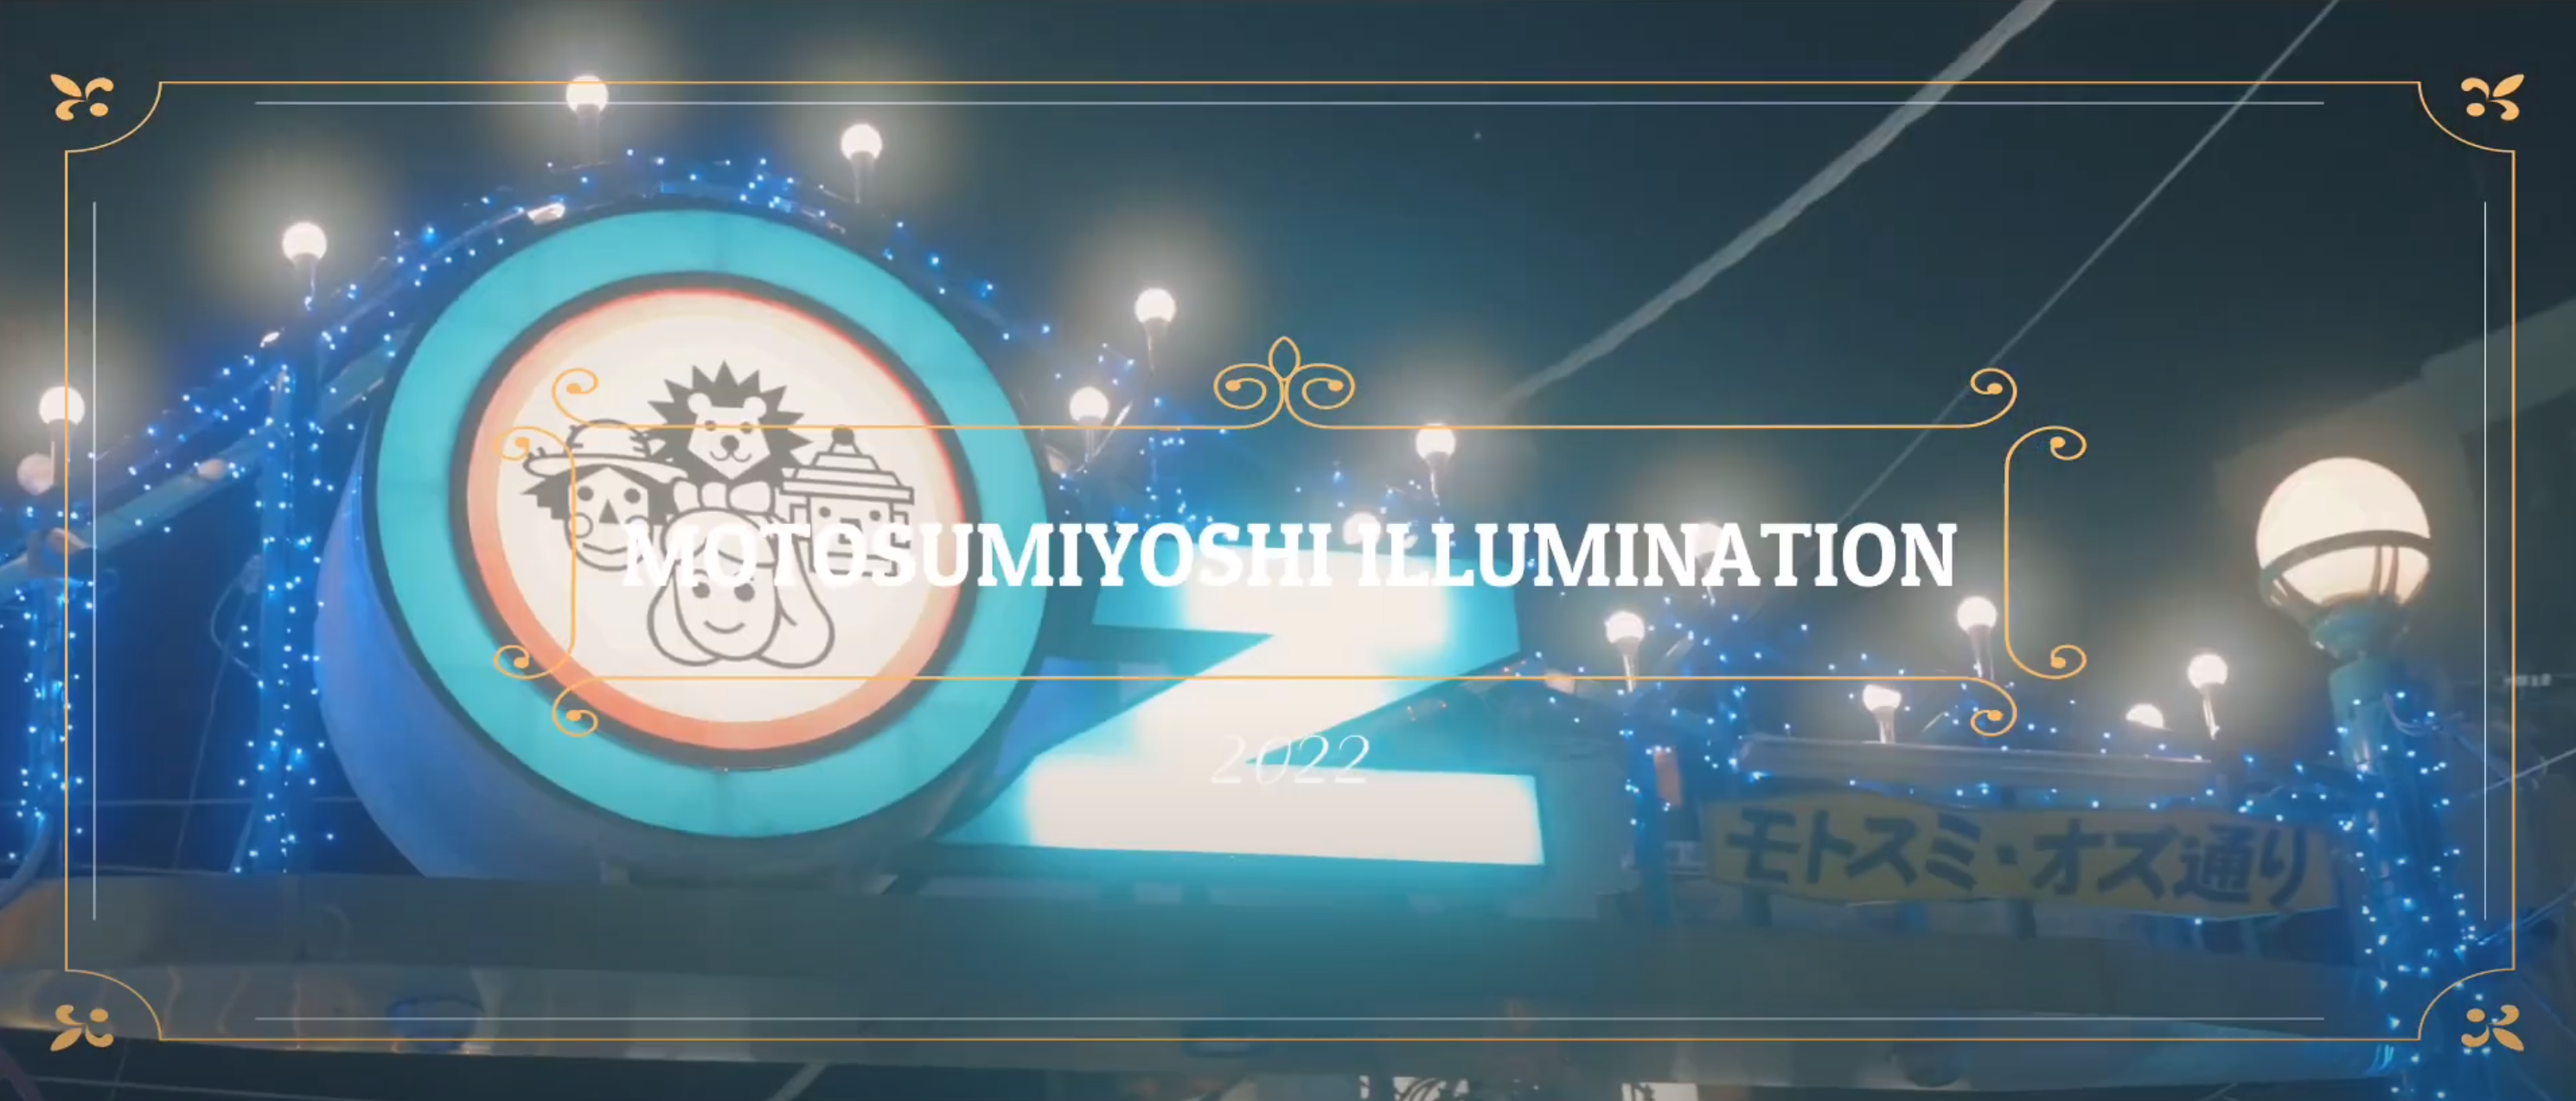 MOTOSUMIYOSHI ILLUMINATION 2022